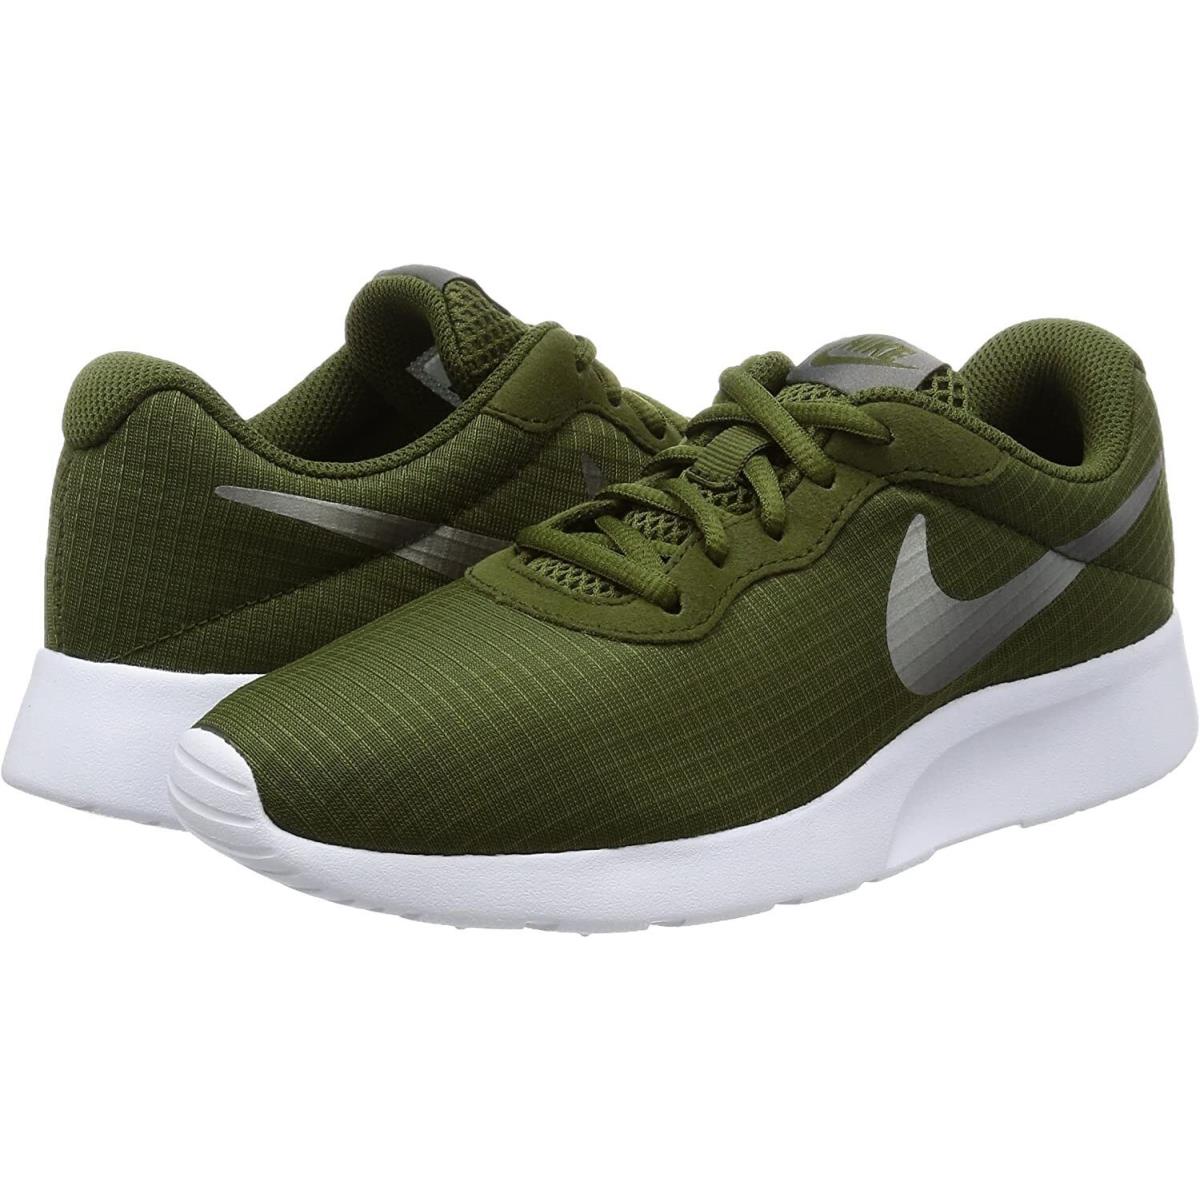 Nike Tanjun SE BR Running Shoe Camo Green 844908-302 Women`s Size 5.5